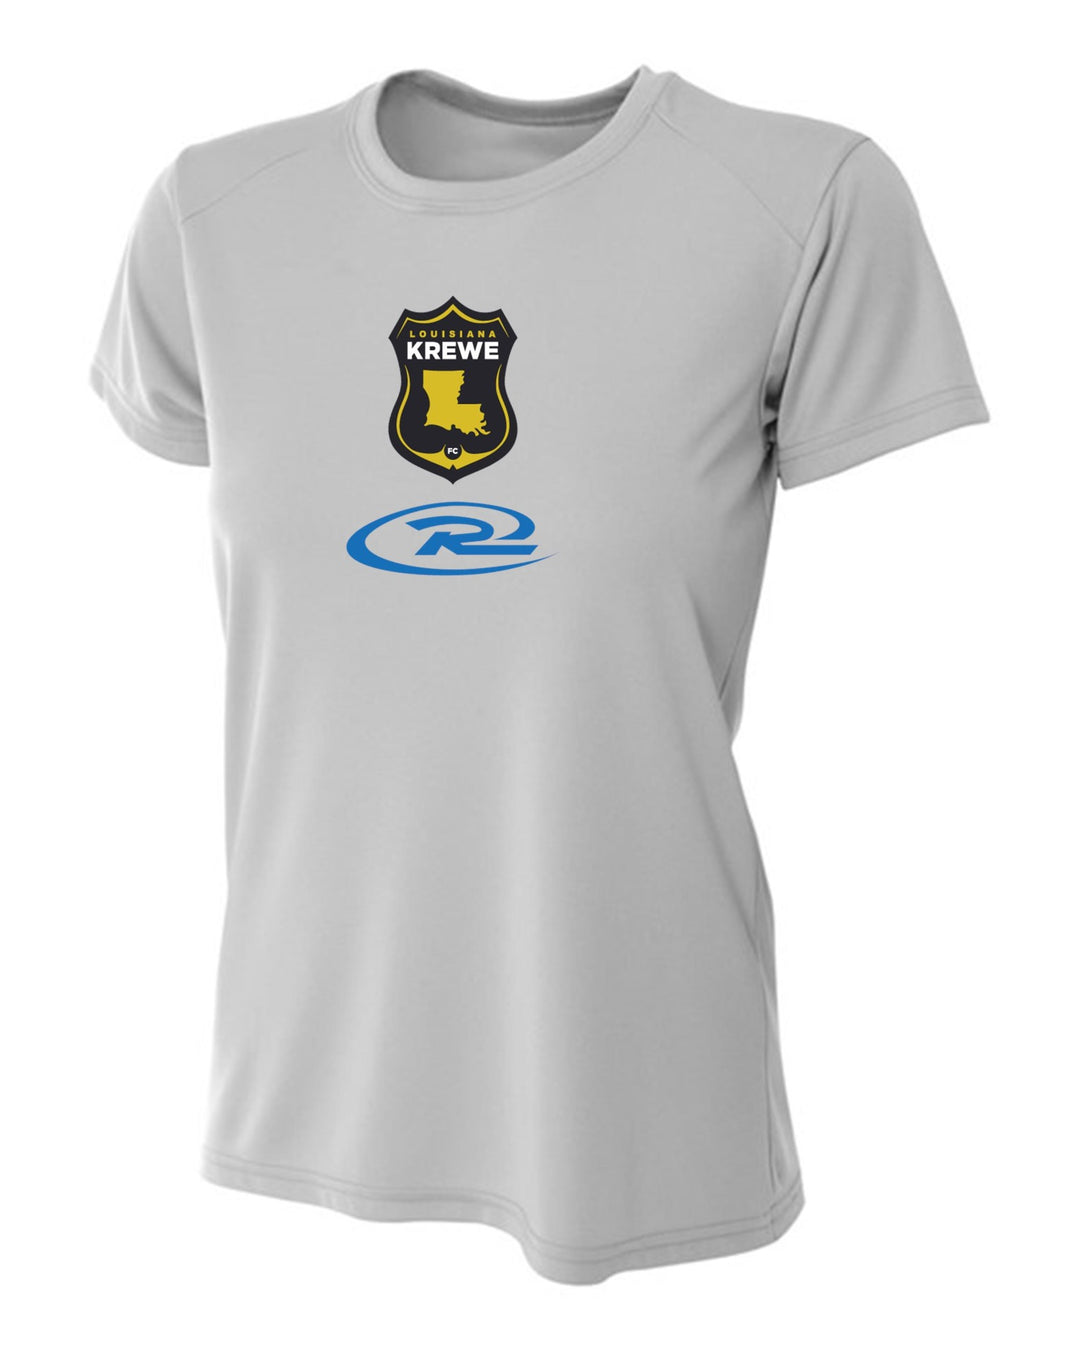 A4 La Krewe-Rush Short-Sleeve Shirt FC - Black, Silver Or White LA KREWE RUSH Silver Womens Small - Third Coast Soccer